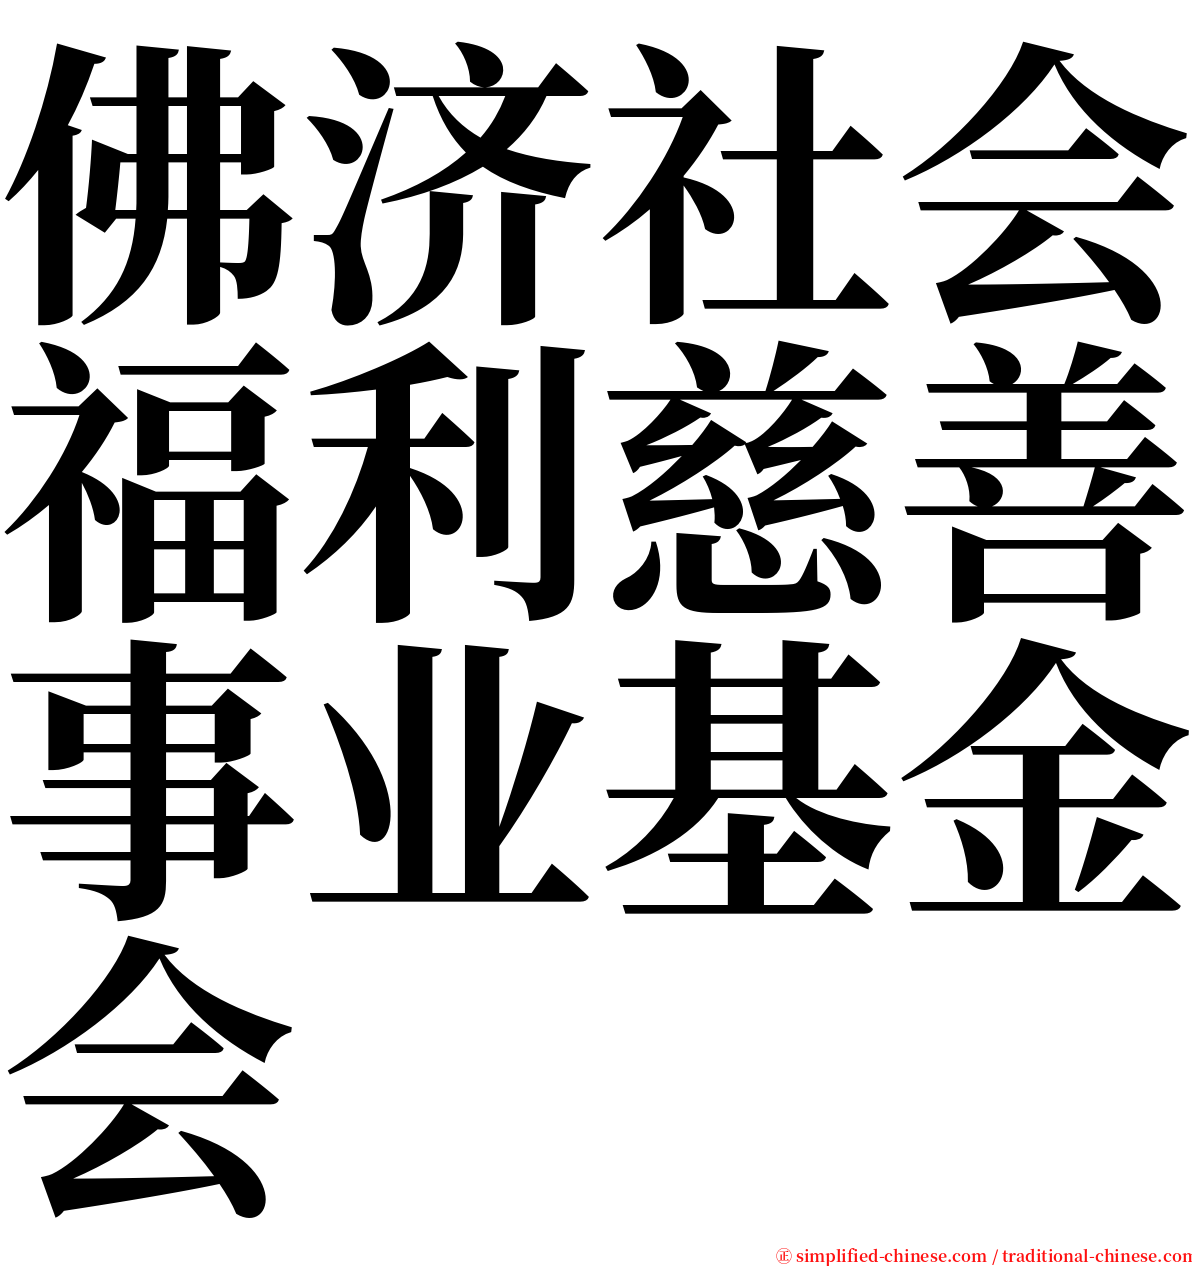 佛济社会福利慈善事业基金会 serif font